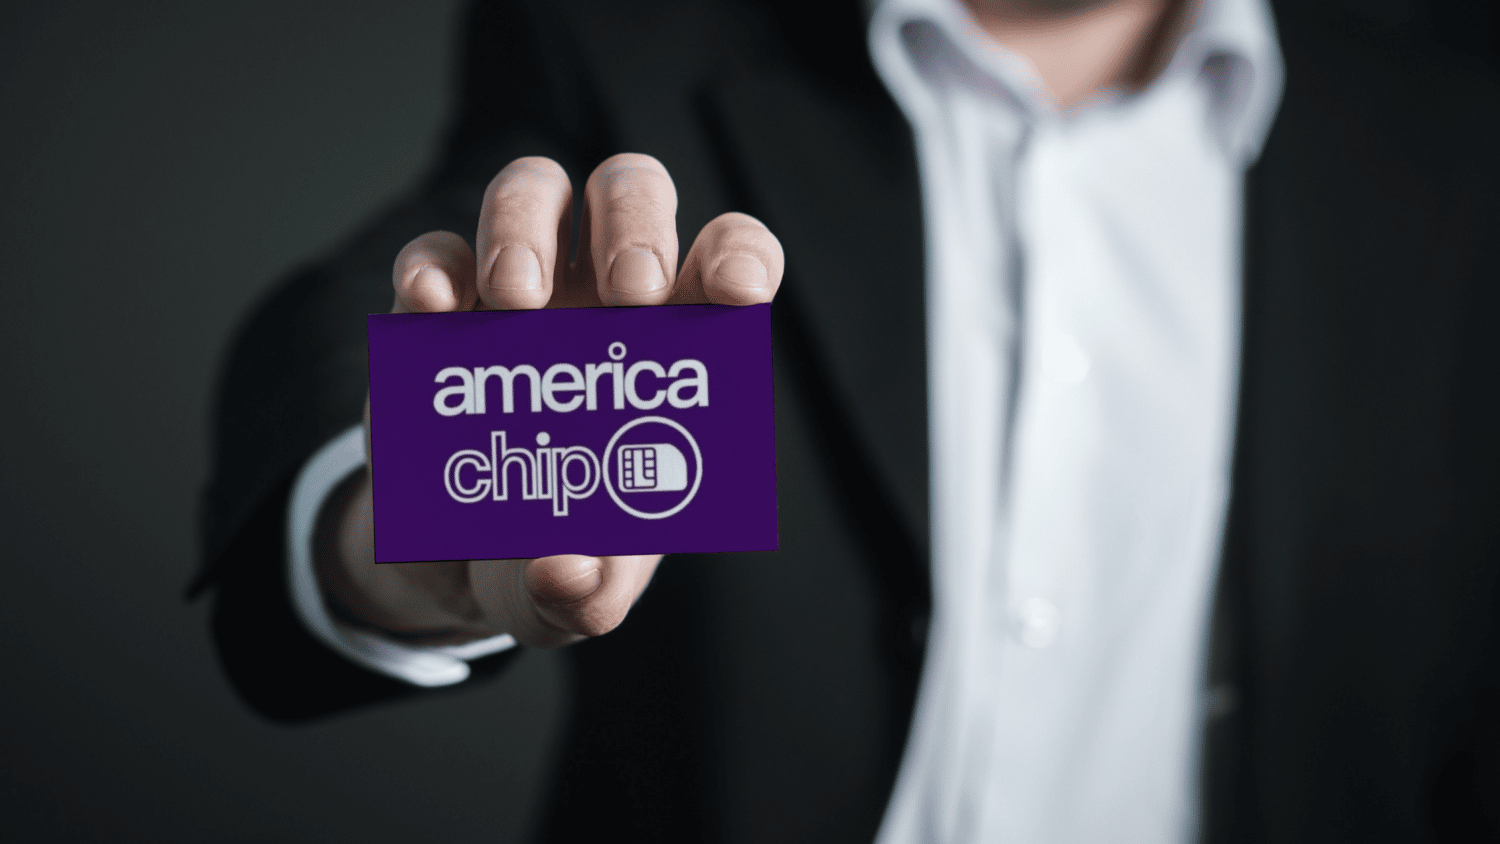 homem branco usando terno perto está com a mão estendida para frente, segurando um cartão com o logo da america chip